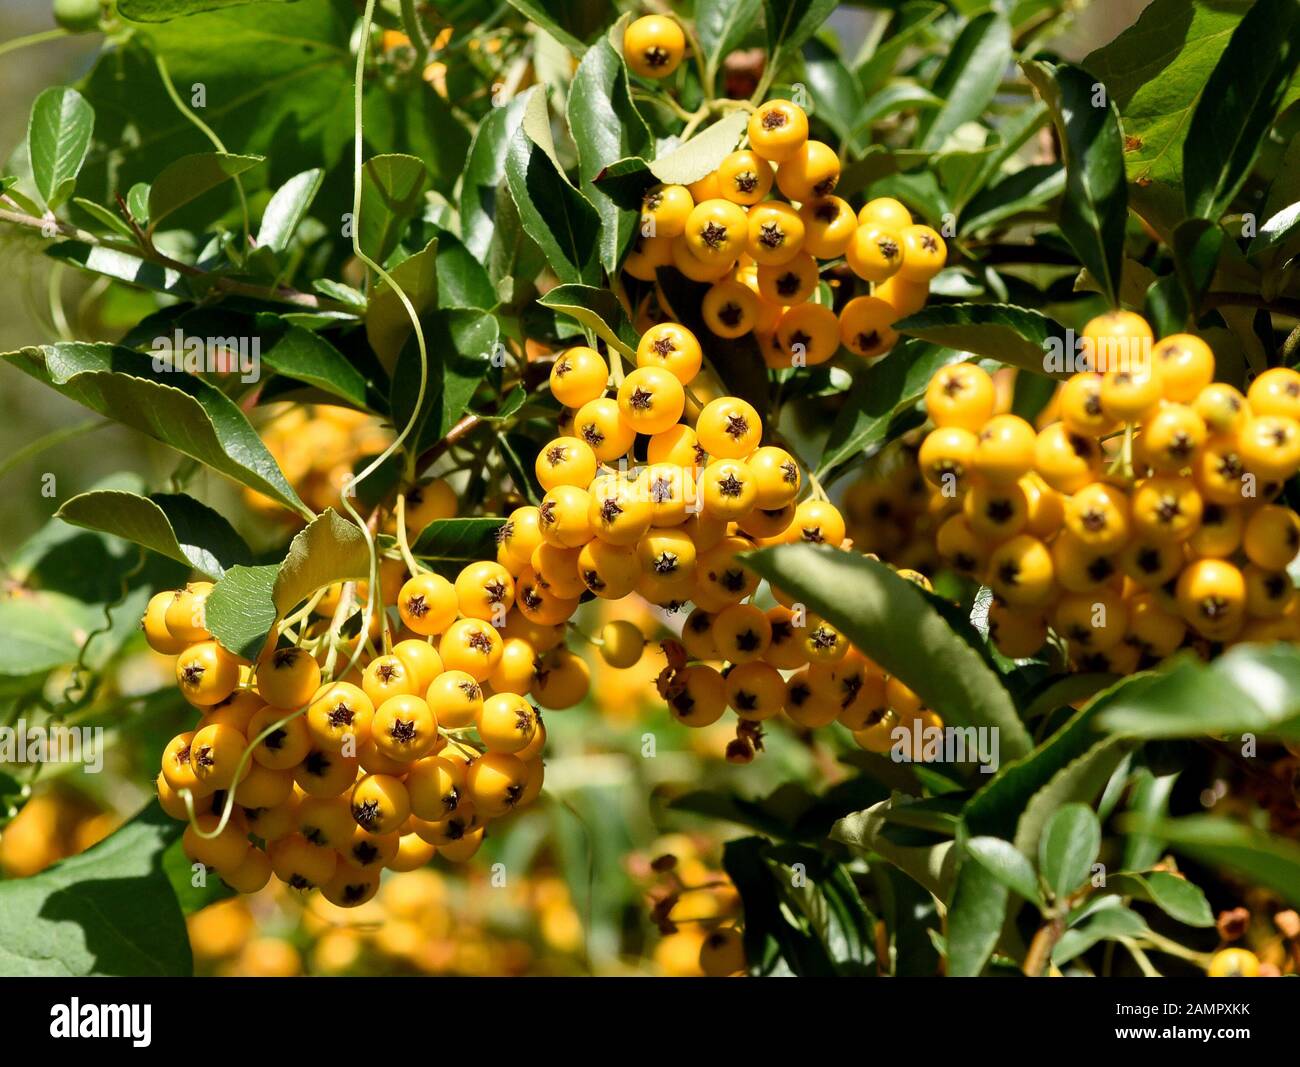 Feuerdorn, Pyracantha coccinea,  ist eine wildwachsende  Heilpflanze mit gelben oder roten Fruechten. Firethorn, Pyracantha coccinea, is a wild medici Stock Photo